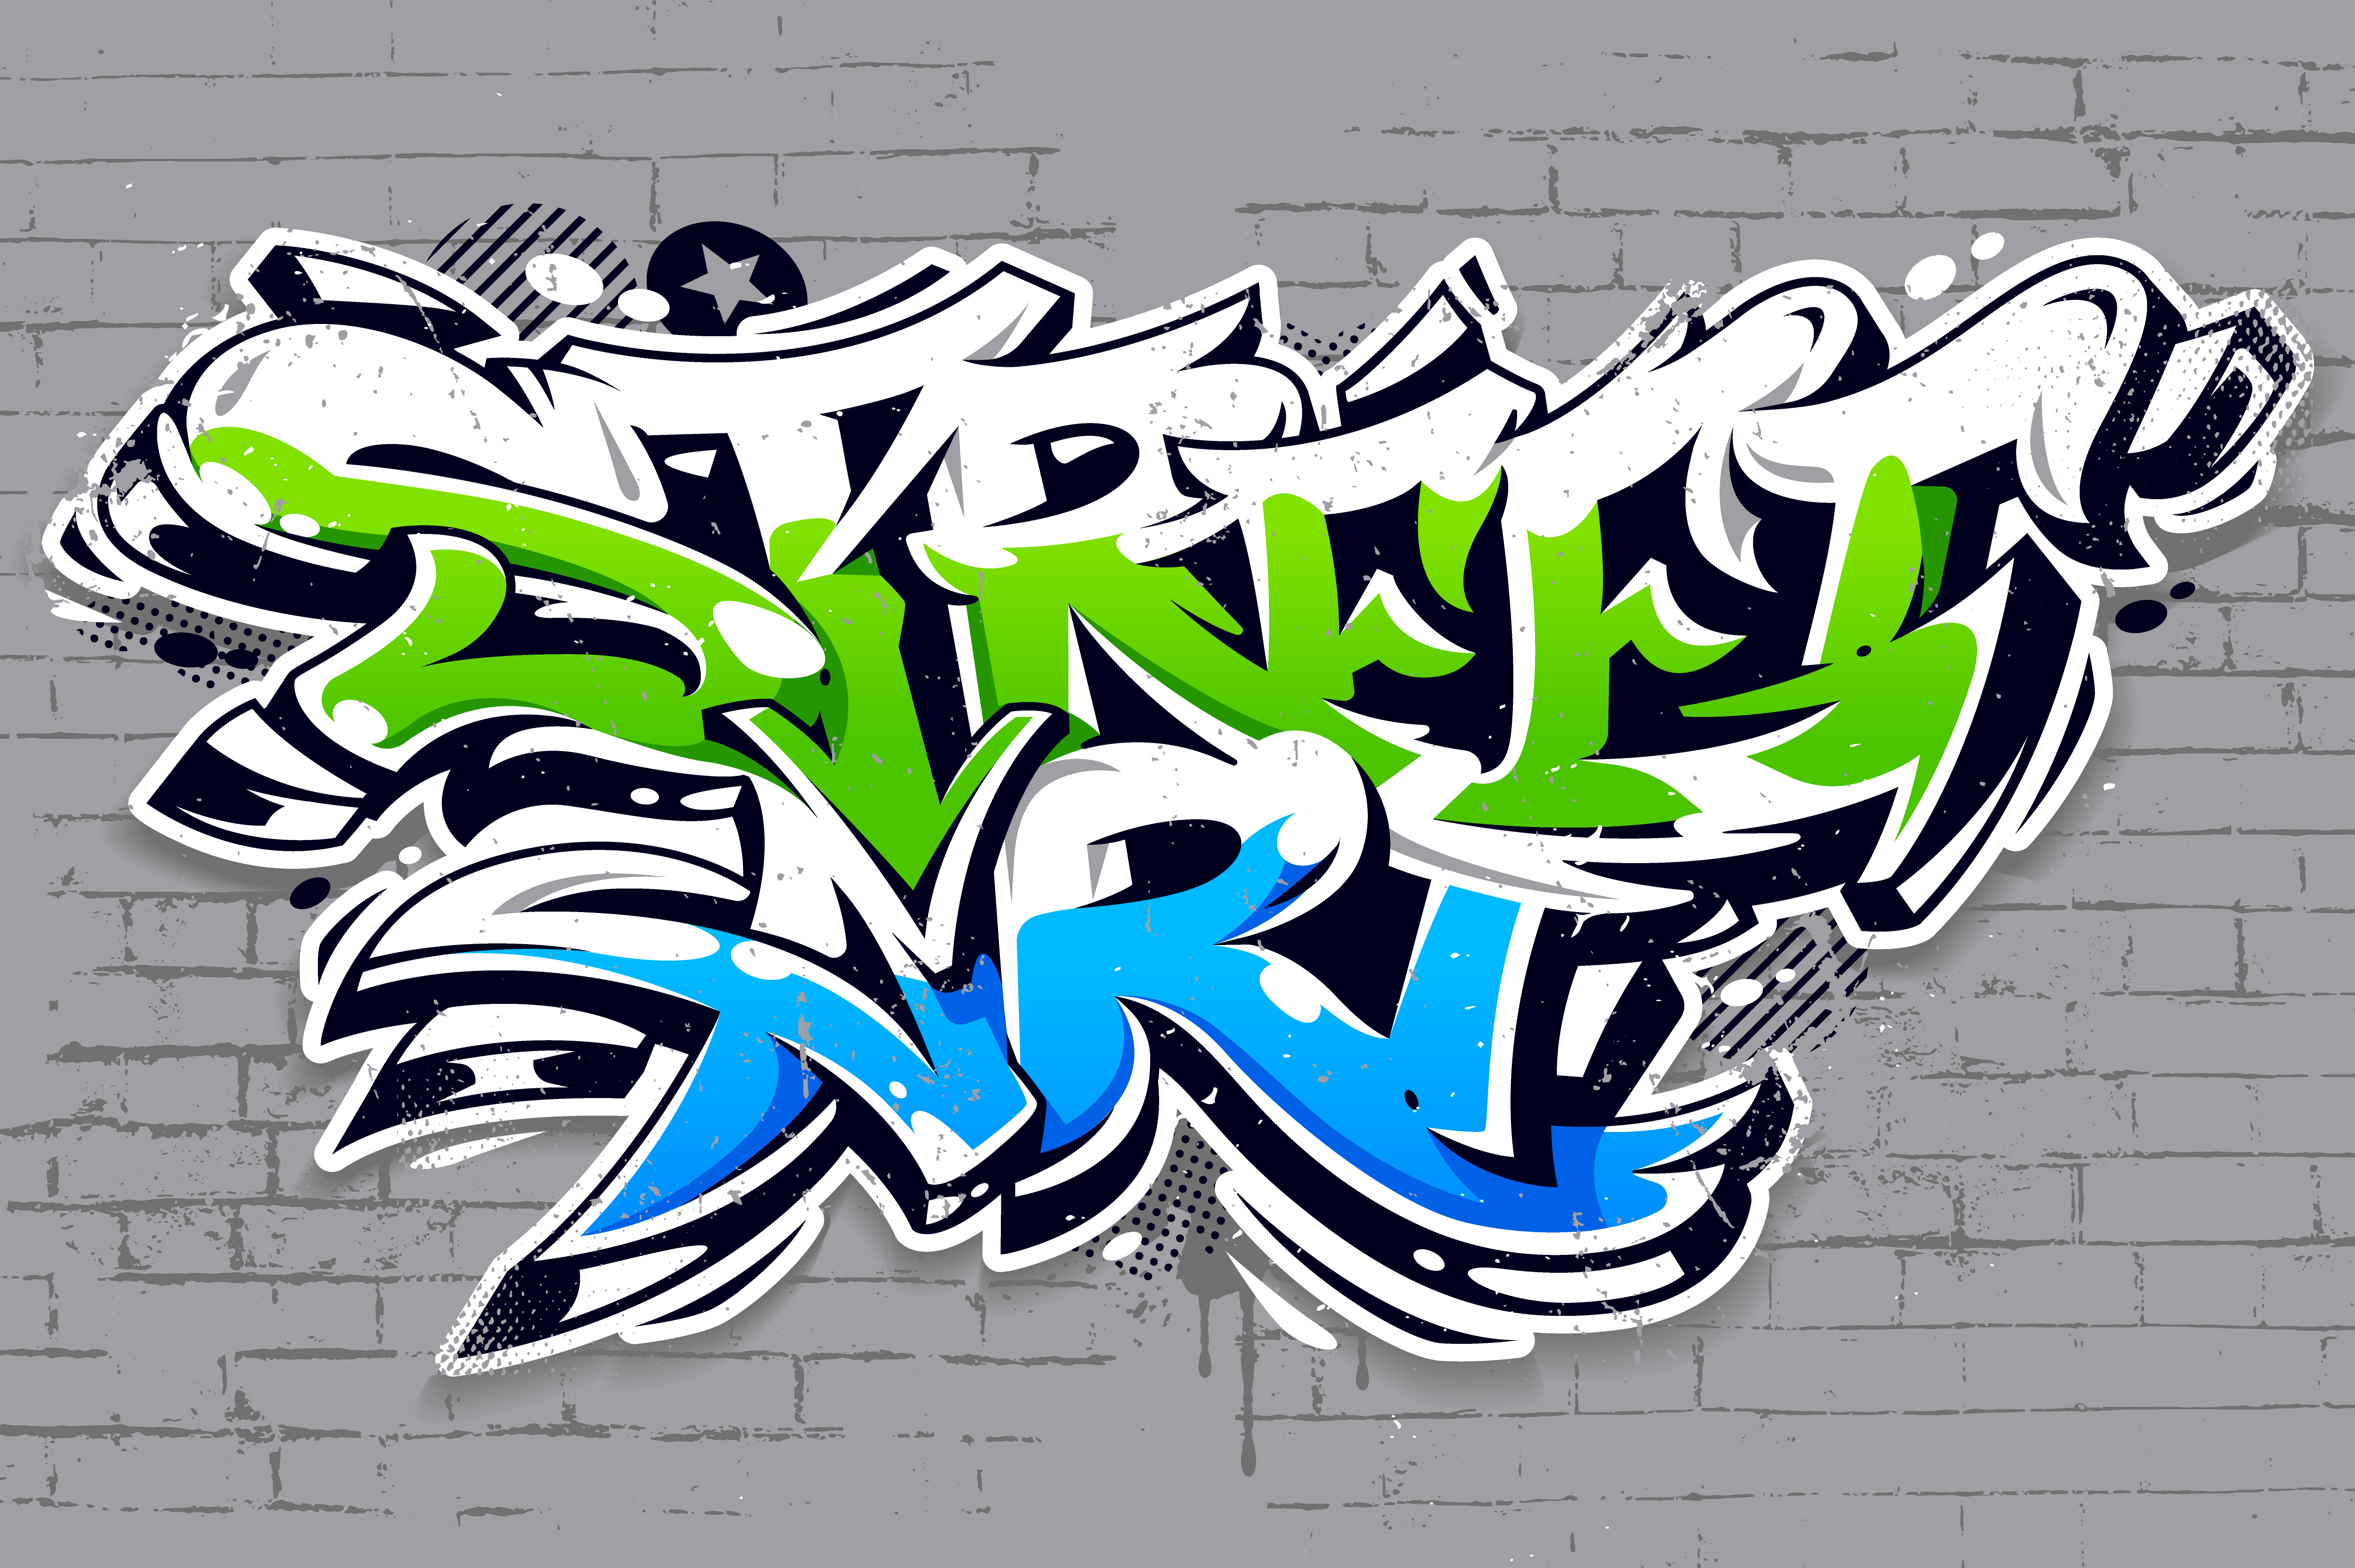 Graffiti Logo